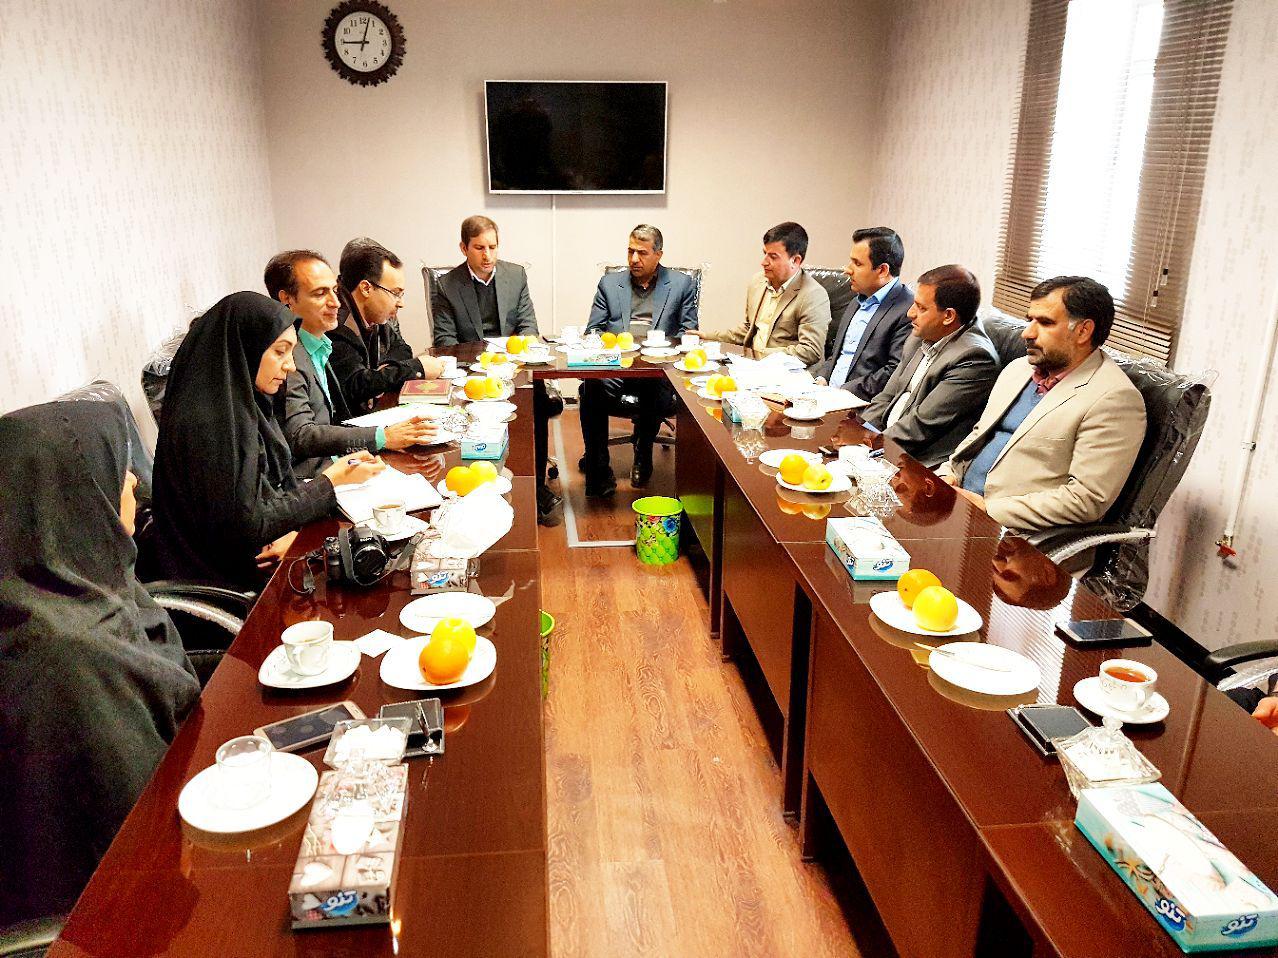 جلسه شورای آموزش و پرورش شهرستان فلاورجان در ایمانشهر برگزار شد